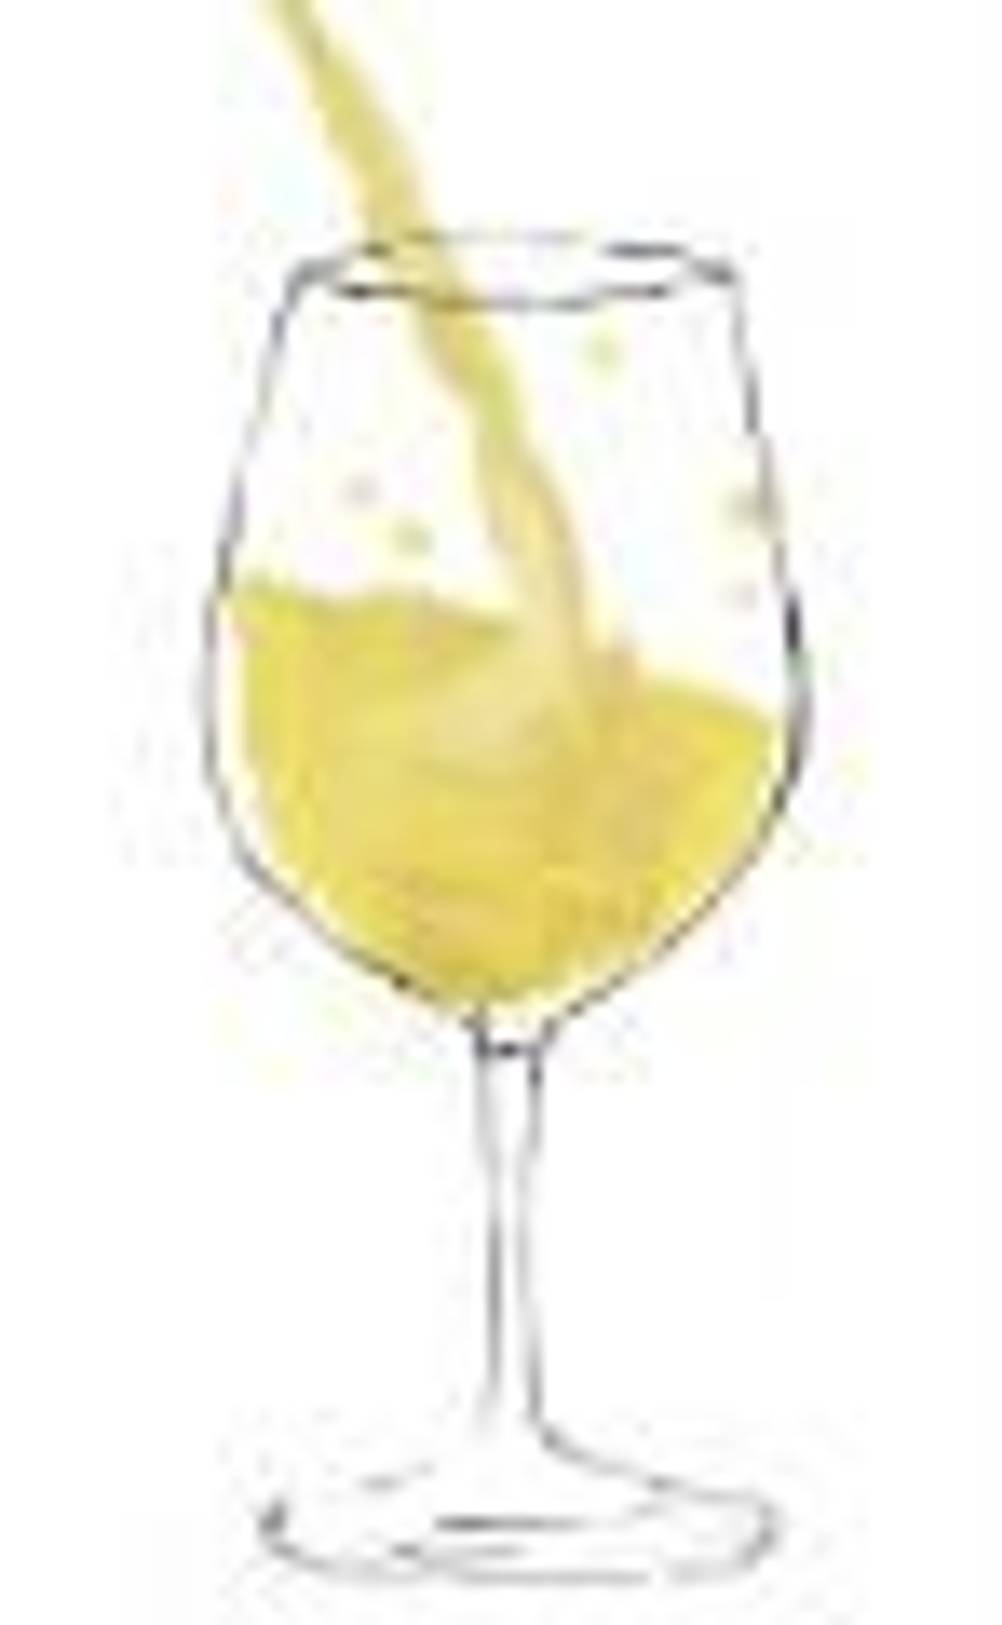 In Weißwein-Tests wird darauf hingewiesen, dass Weißwein Sulfit enthält.